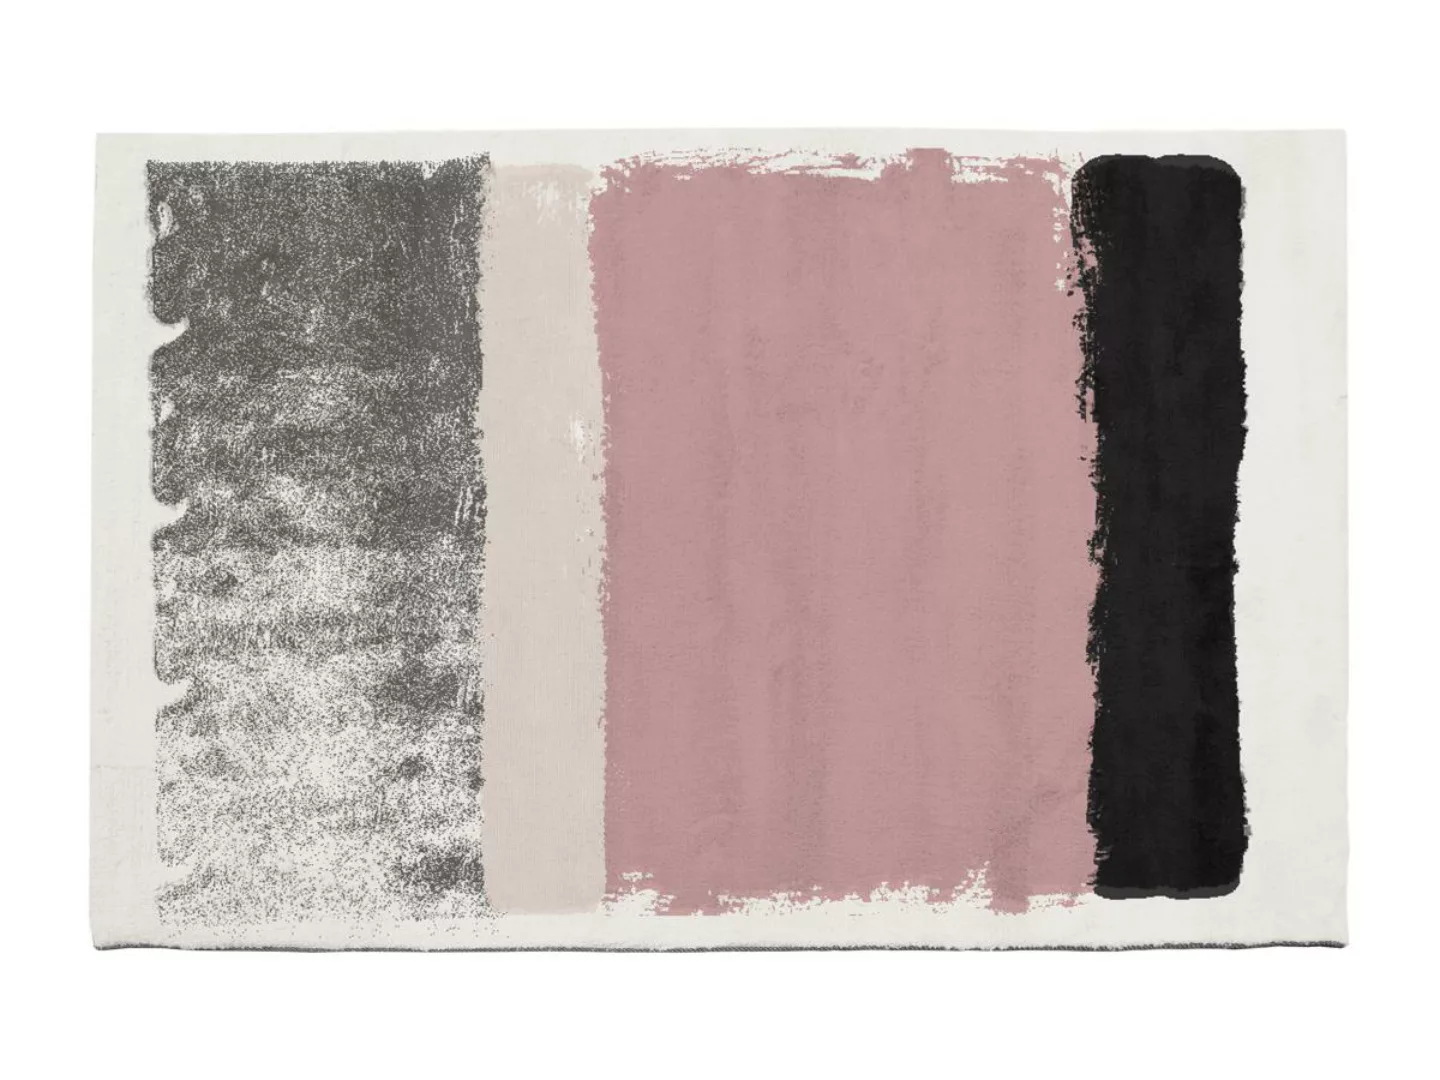 Teppich - 160 x 230 cm - Rosa, Grau & Weiß - CAMDEN günstig online kaufen